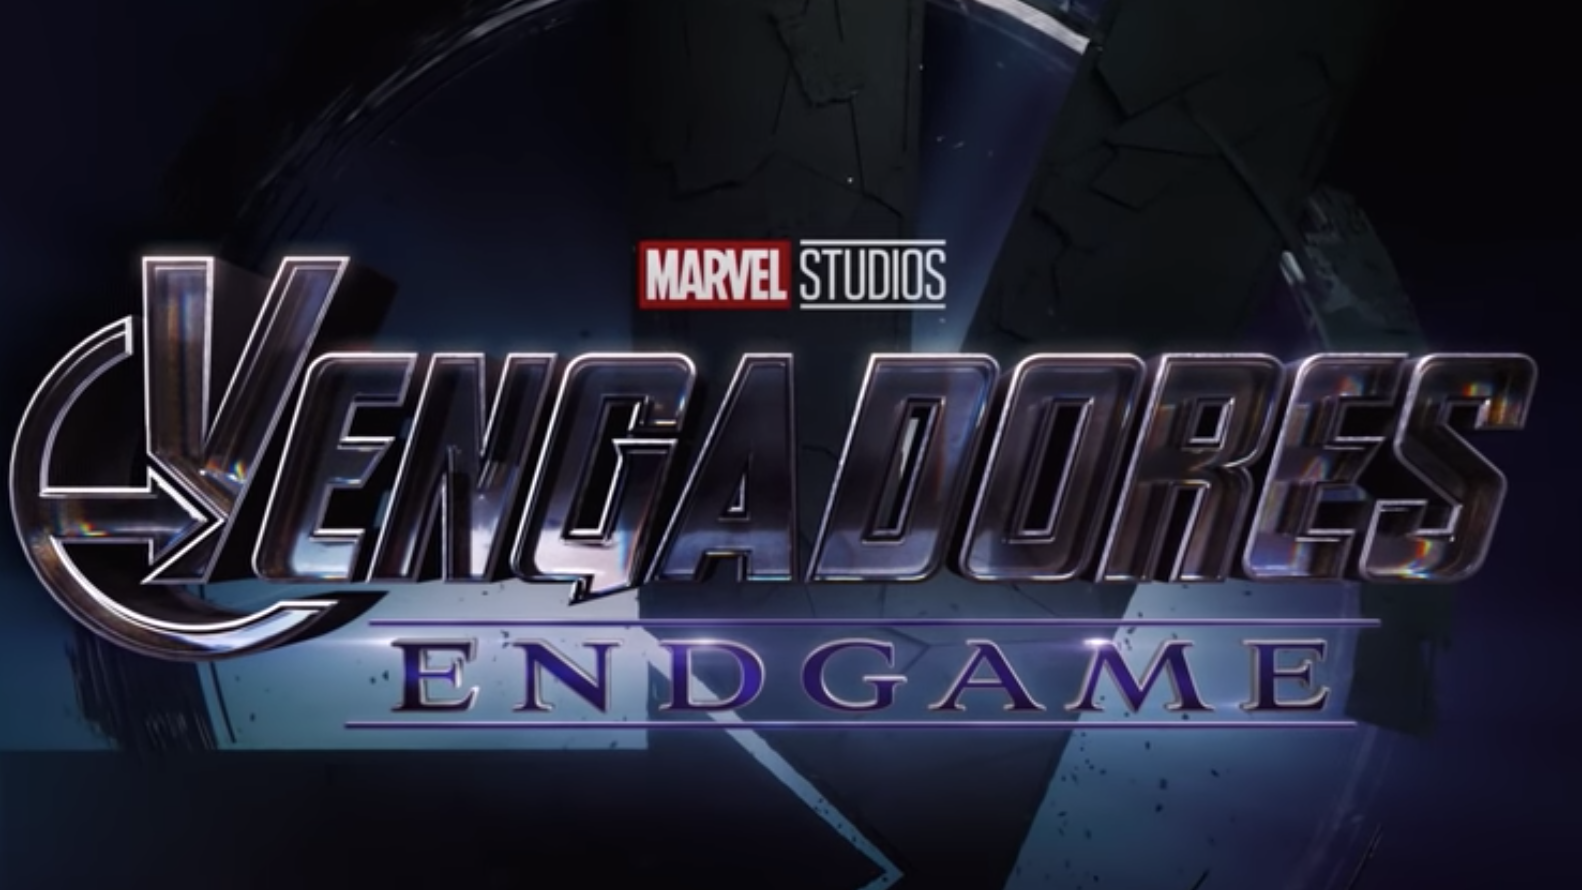 Este es el verdadero significado de 'I love you 3000' en Avengers: Endgame